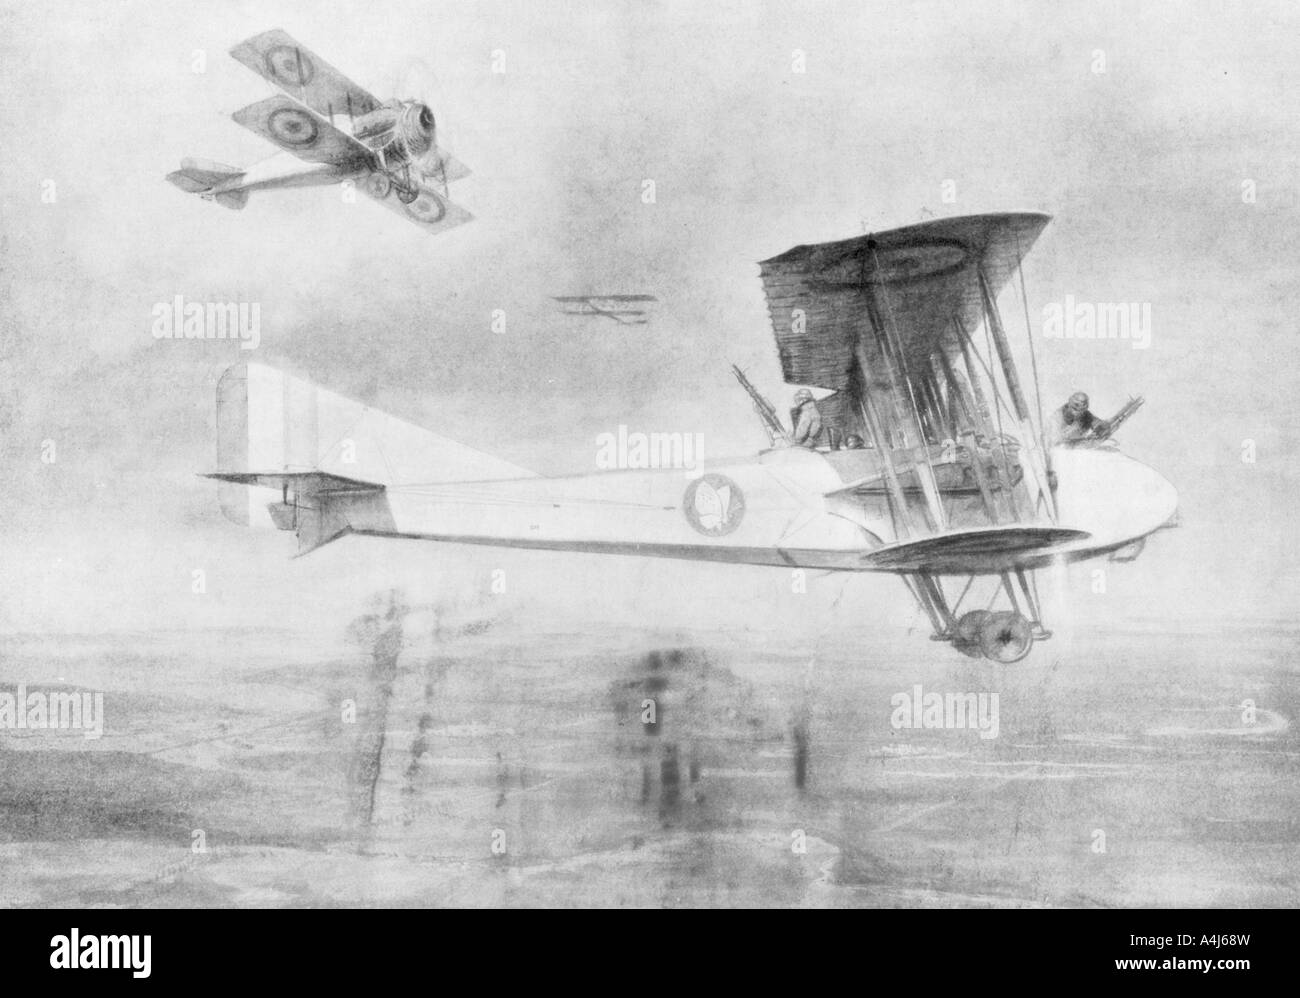 Trois assis-avion sur une mission photographique, protégé par un avion de chasse Spad, 1918 (1926).Artiste : Etienne Cournault Banque D'Images